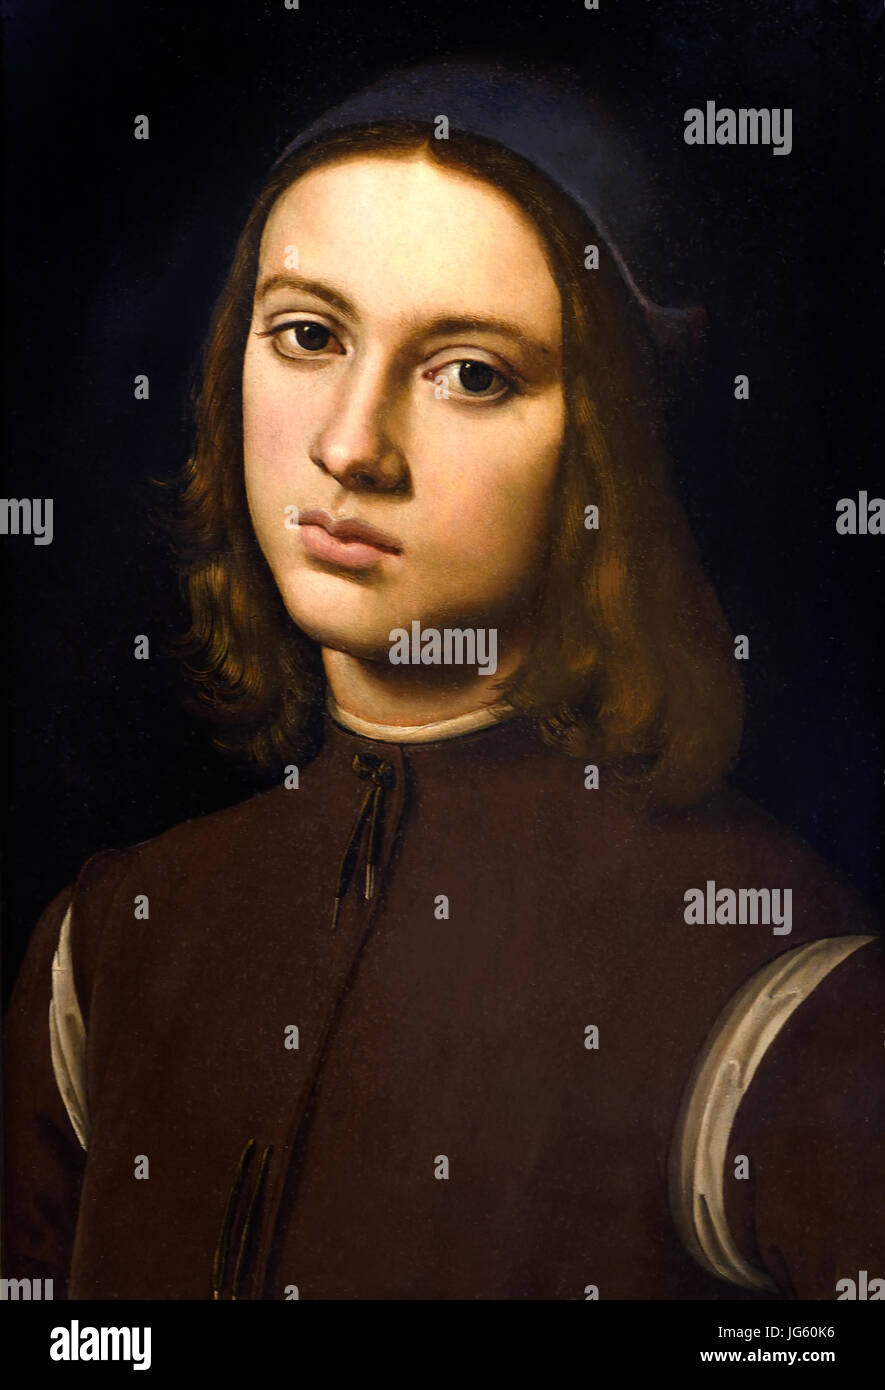 Porträt eines jungen Mannes 1494 Pietro Perugino 1446/1452 – 1523 geboren Pietro Vannucci, italienischen Renaissance-Maler der umbrischen Schule, Italien. Stockfoto